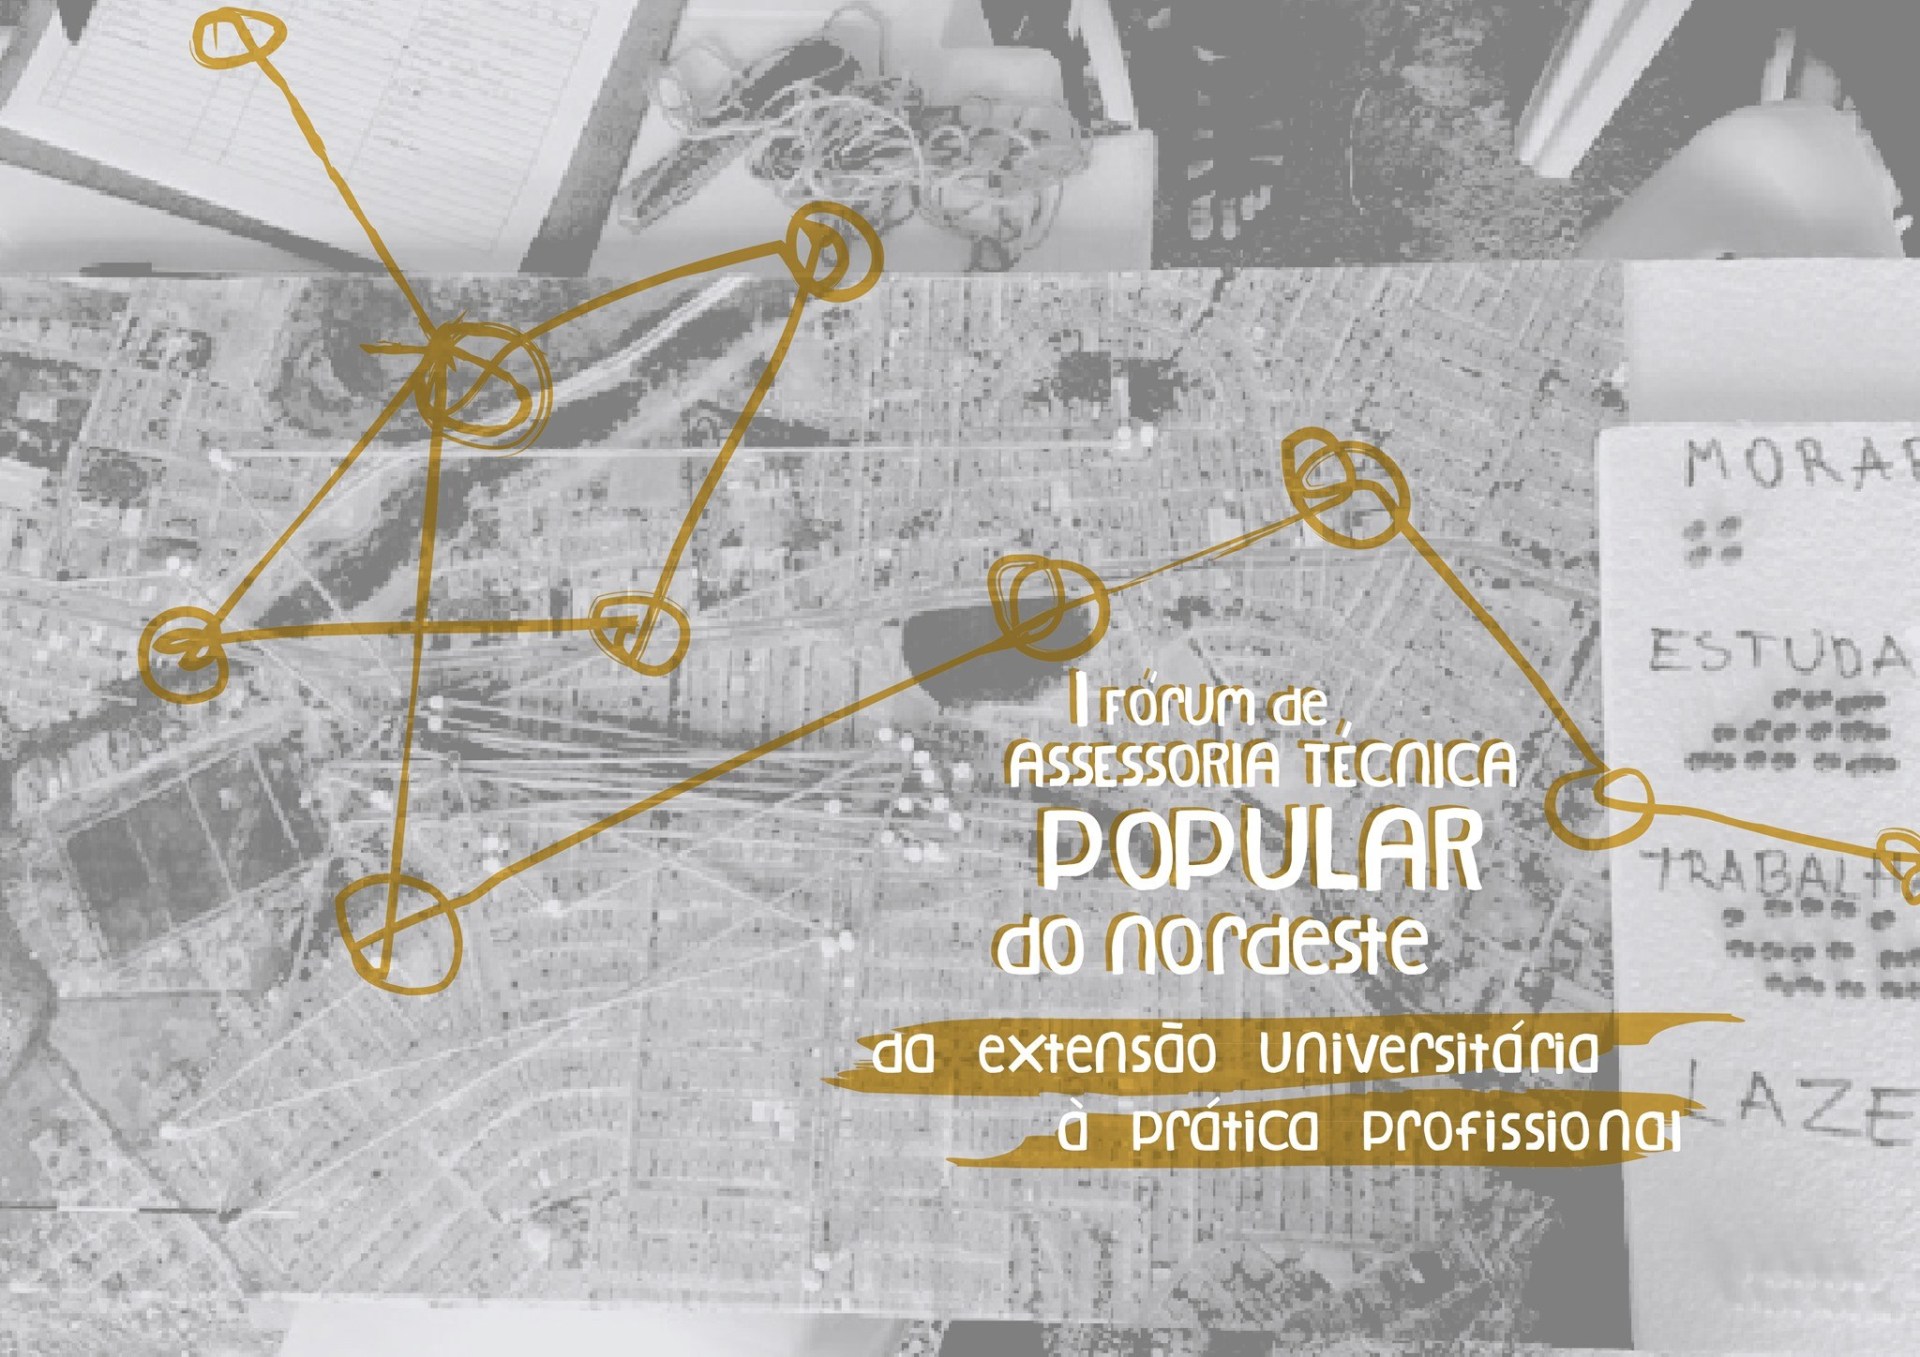 1o-Forum-de-Assessoria-Tecnica-Popular-do-Nordeste-BN.jpg